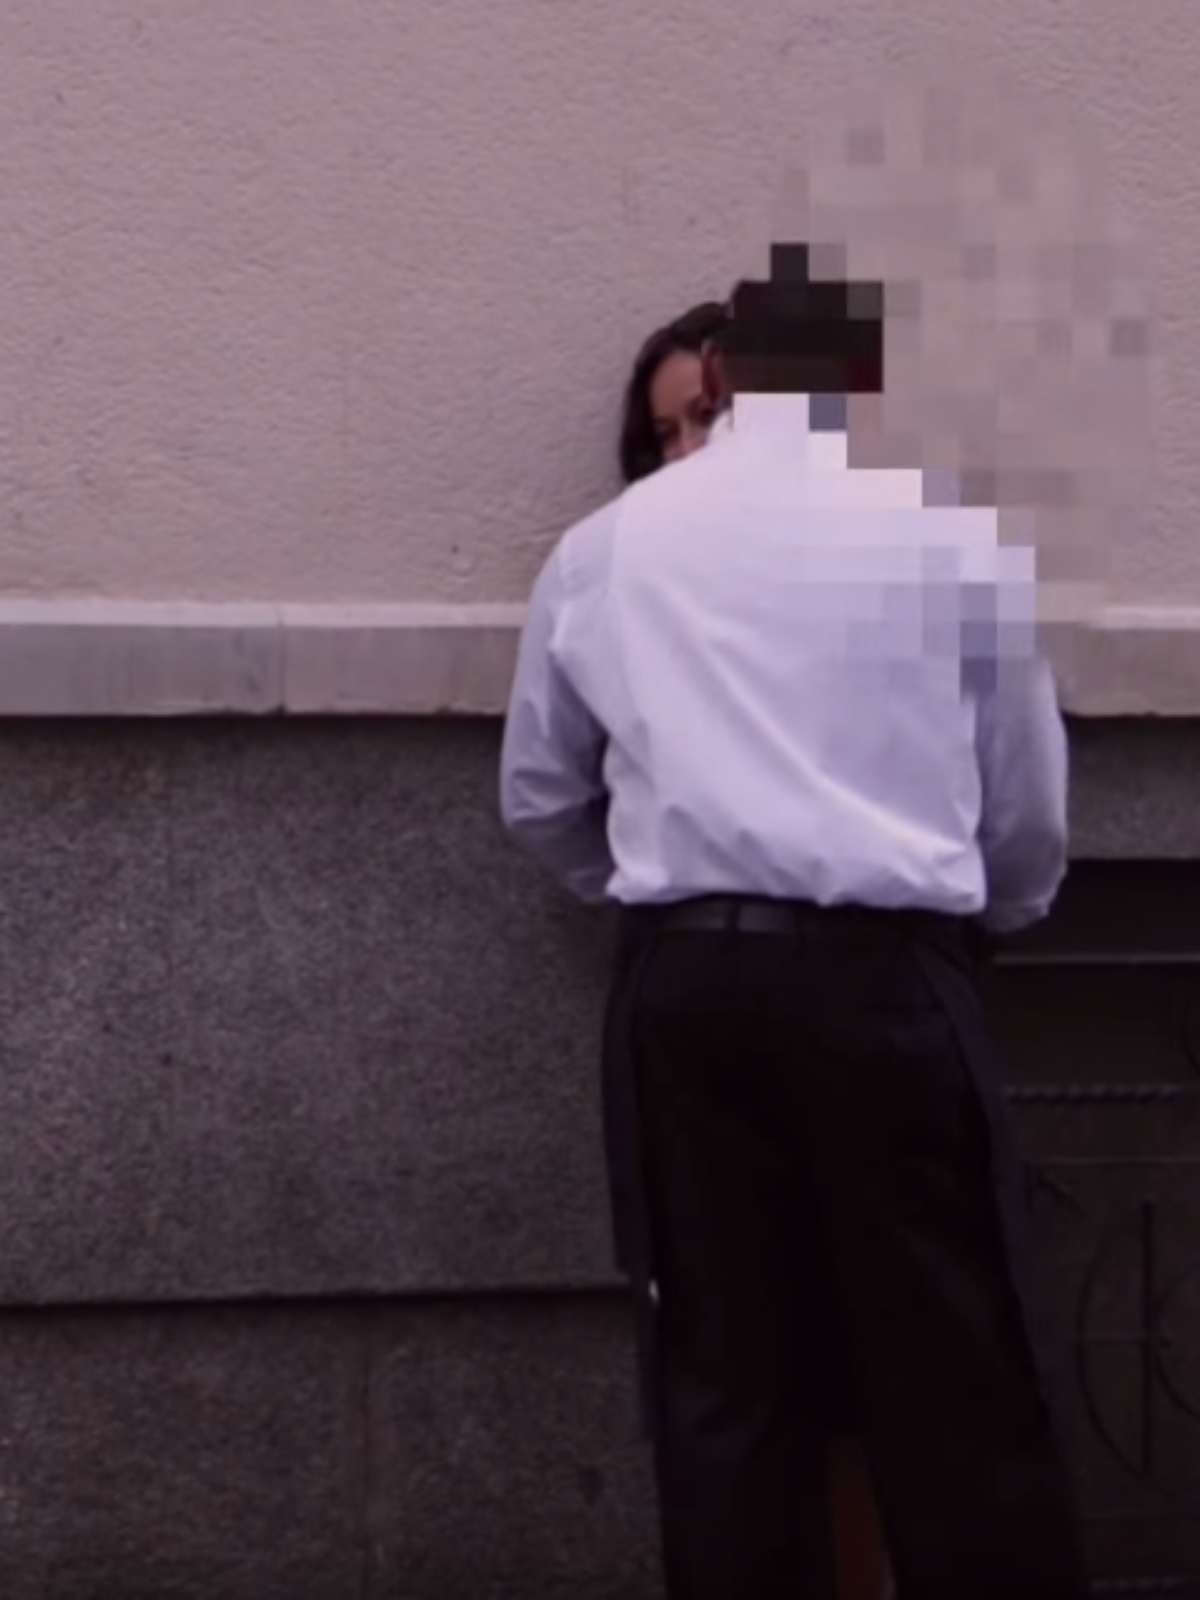 Vídeo flagra reação de homens ao encontrarem mulher bêbada